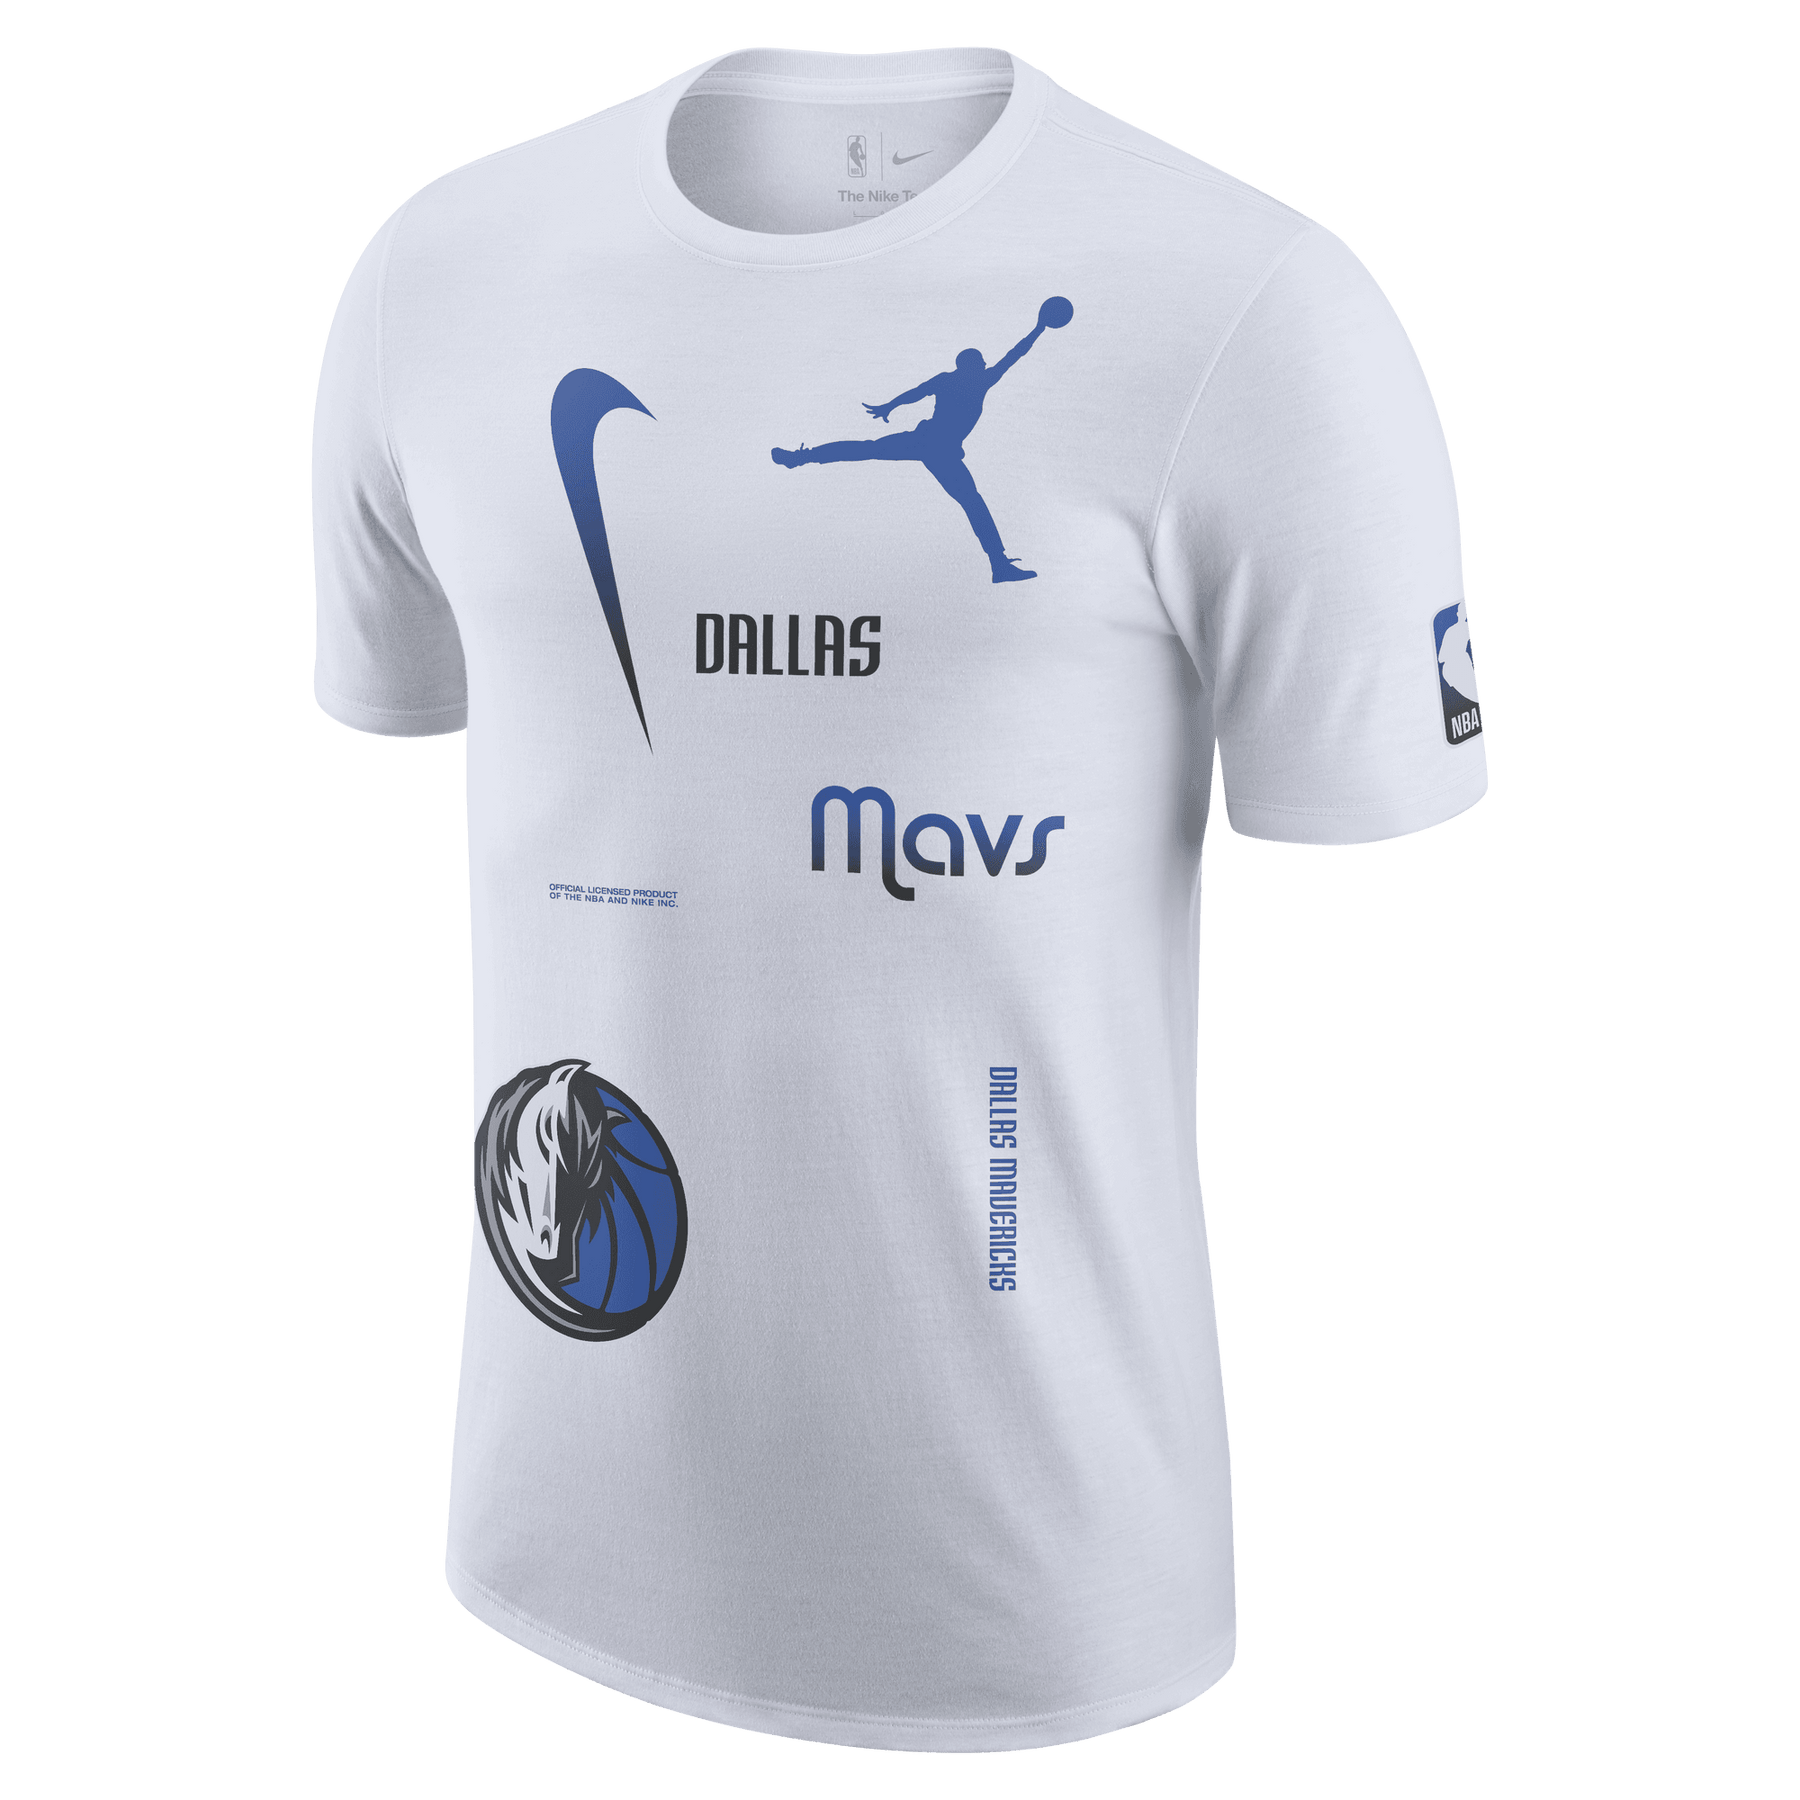 Official Dallas Mavericks Apparel, Mavs Gear, Dallas Mavericks